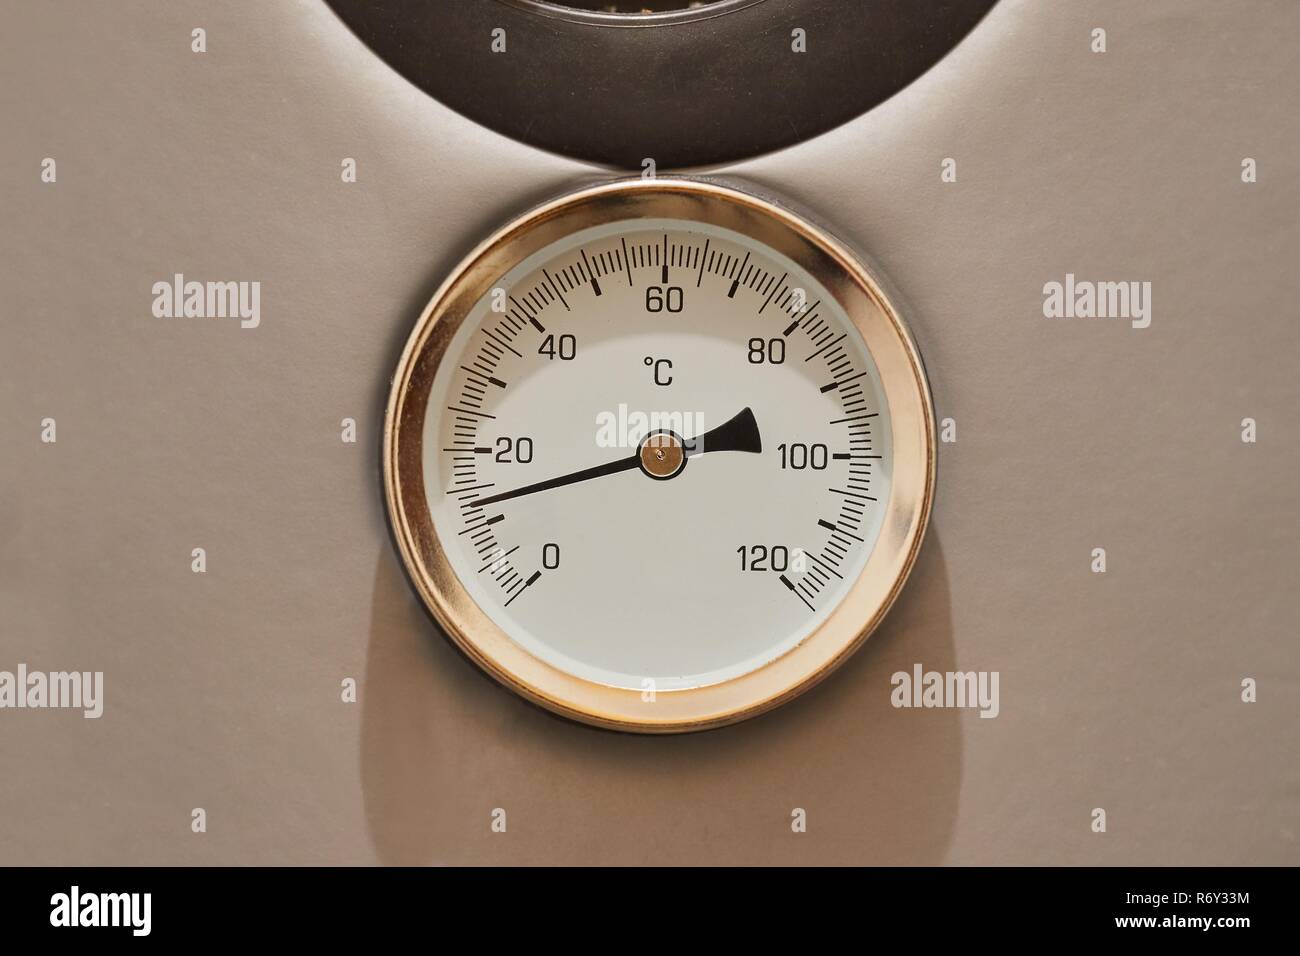 Heißes Wasser Thermometer Stockfotografie - Alamy